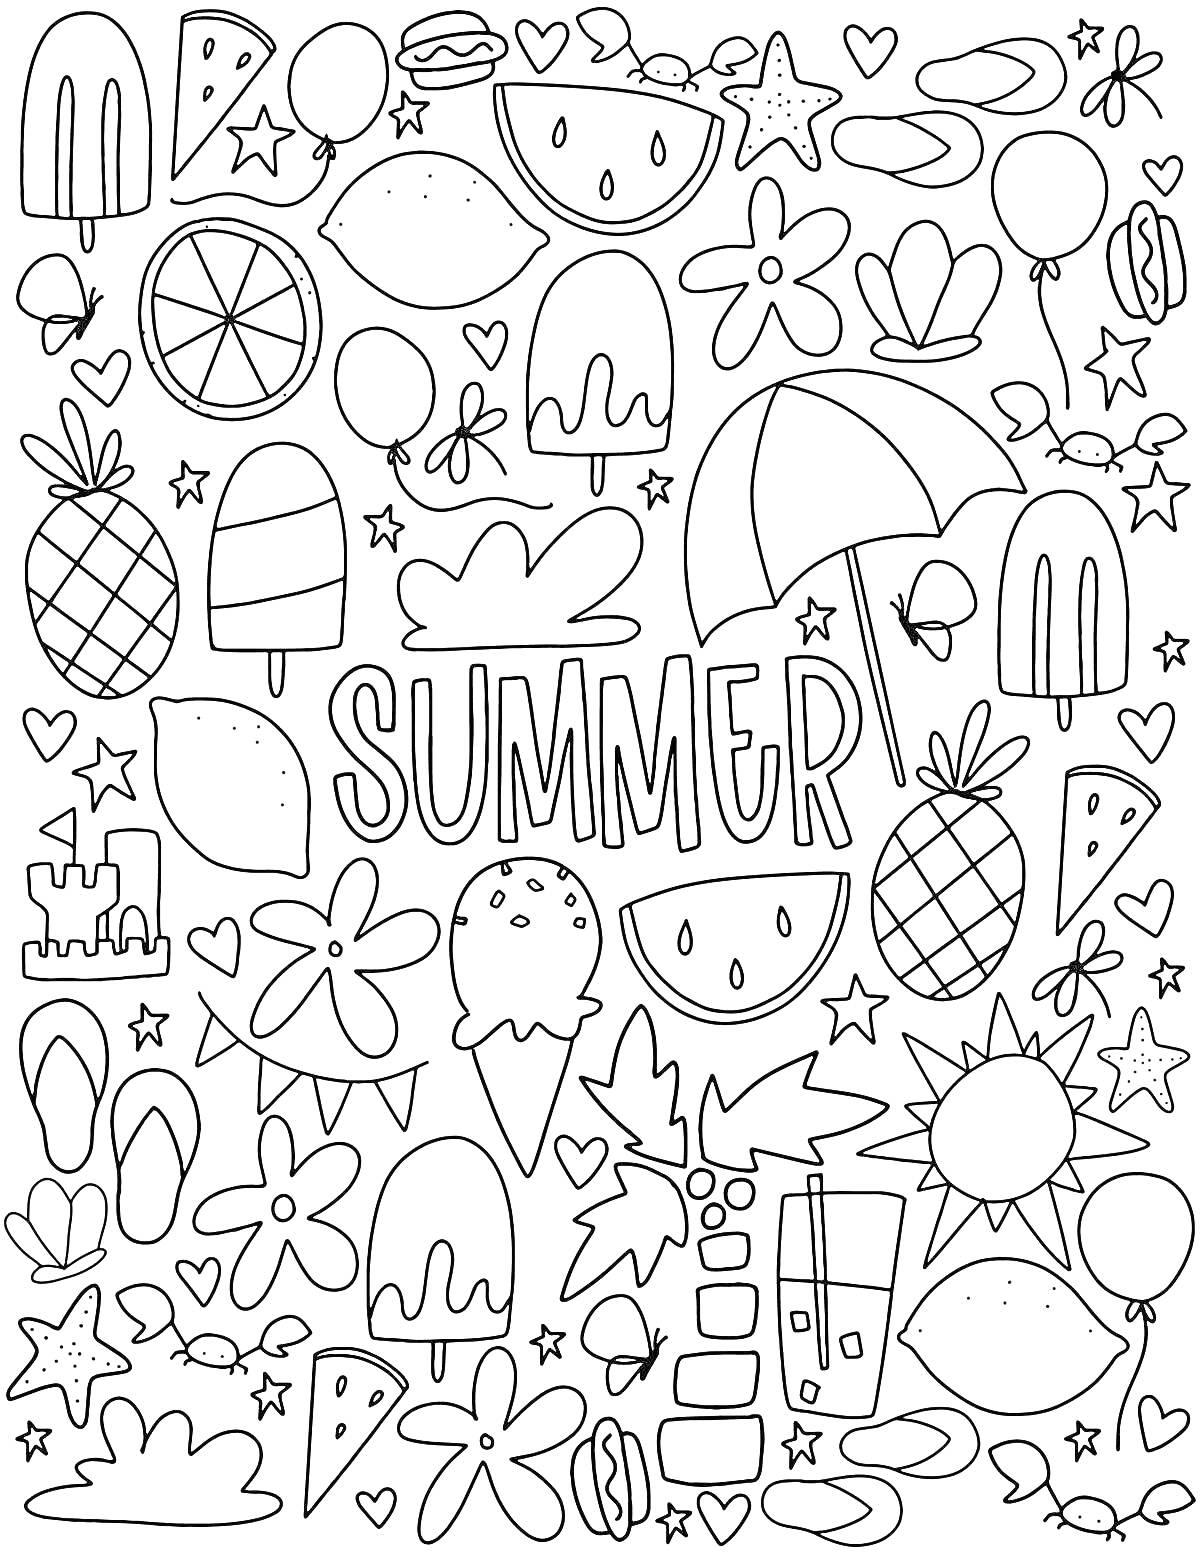 Раскраска Летние рисунки - арбуз, ананас, мороженое, снежинка, звезды, сердечки, ракушки, листочки, зонтик, шлёпанцы, солнце, воздушные шары, замок из песка, напиток, надпись Summer